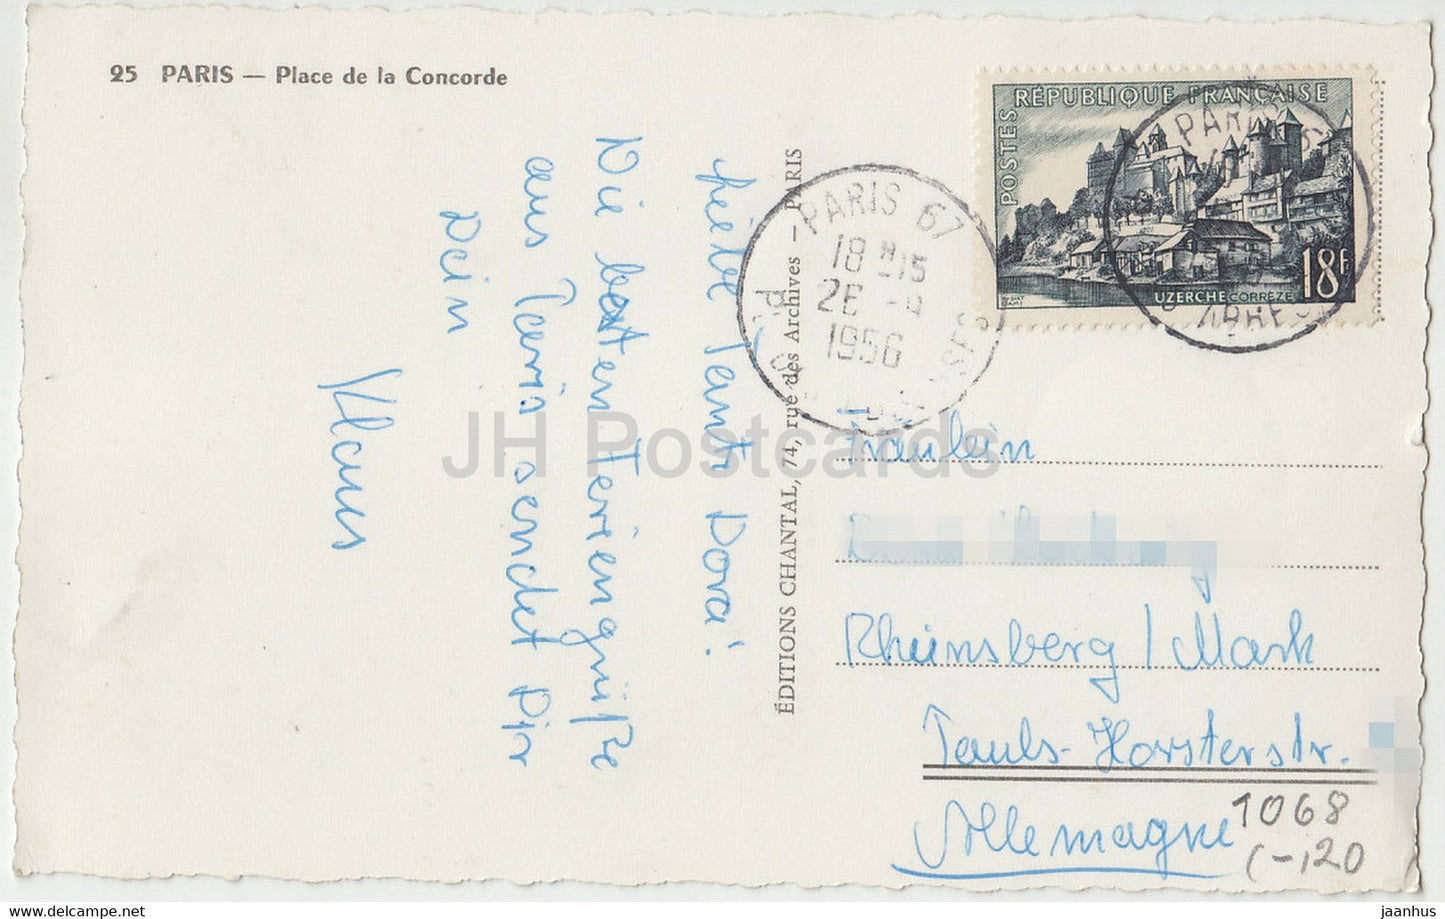 Paris - Place de la Concorde - voiture - bus - 25 - carte postale ancienne - 1956 - France - occasion